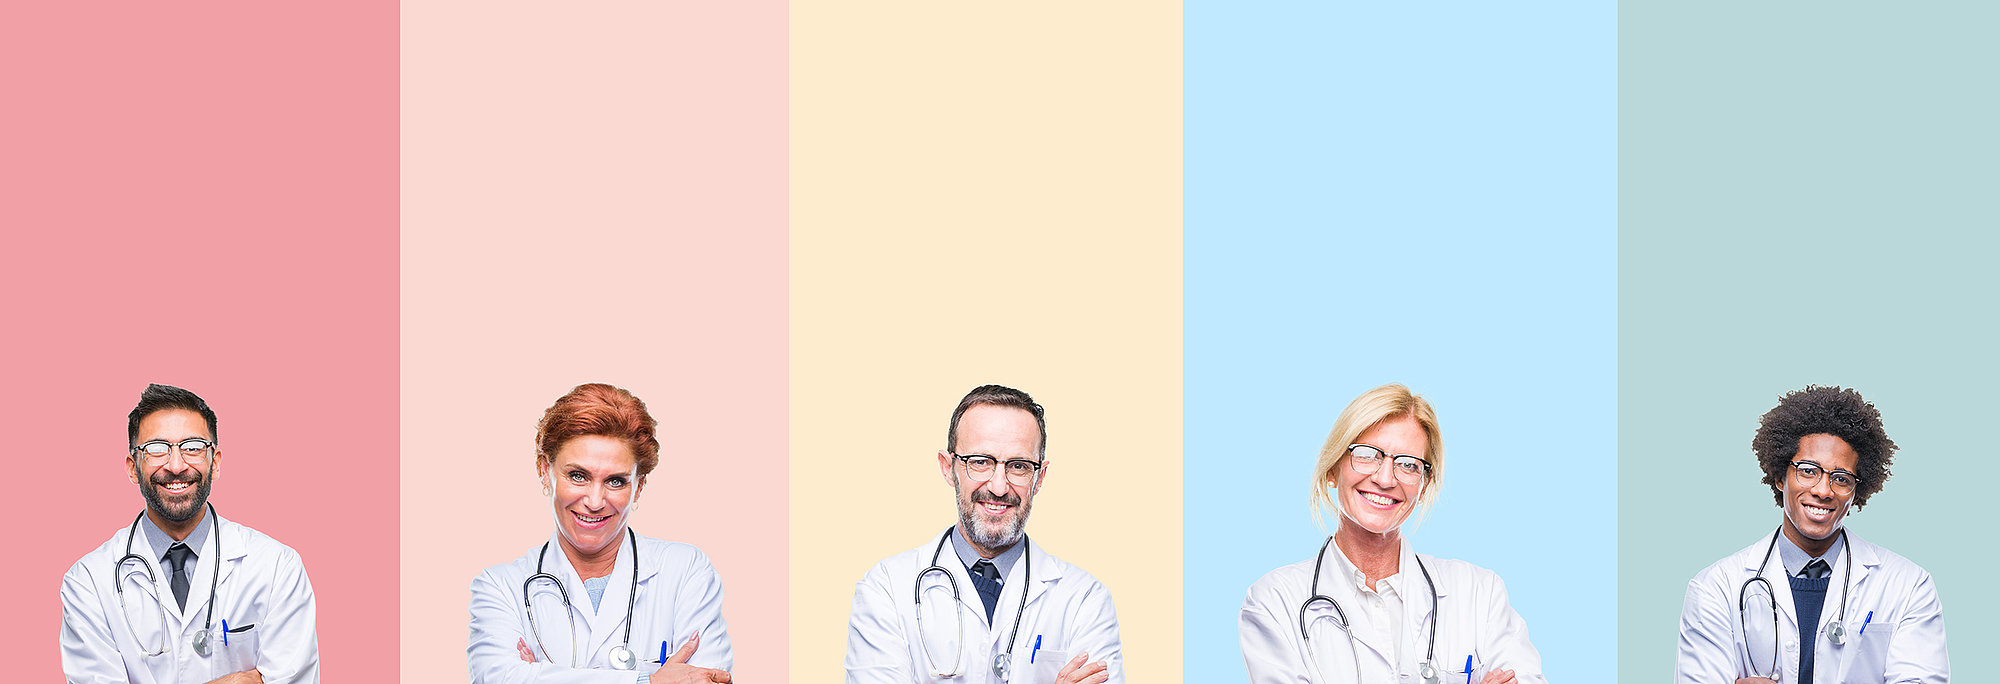 Startbild: Foto von 5 Ärztinnen und Ärzten, die jeder vor einem anderen farblichen Hintergrund nebeneinander stehen